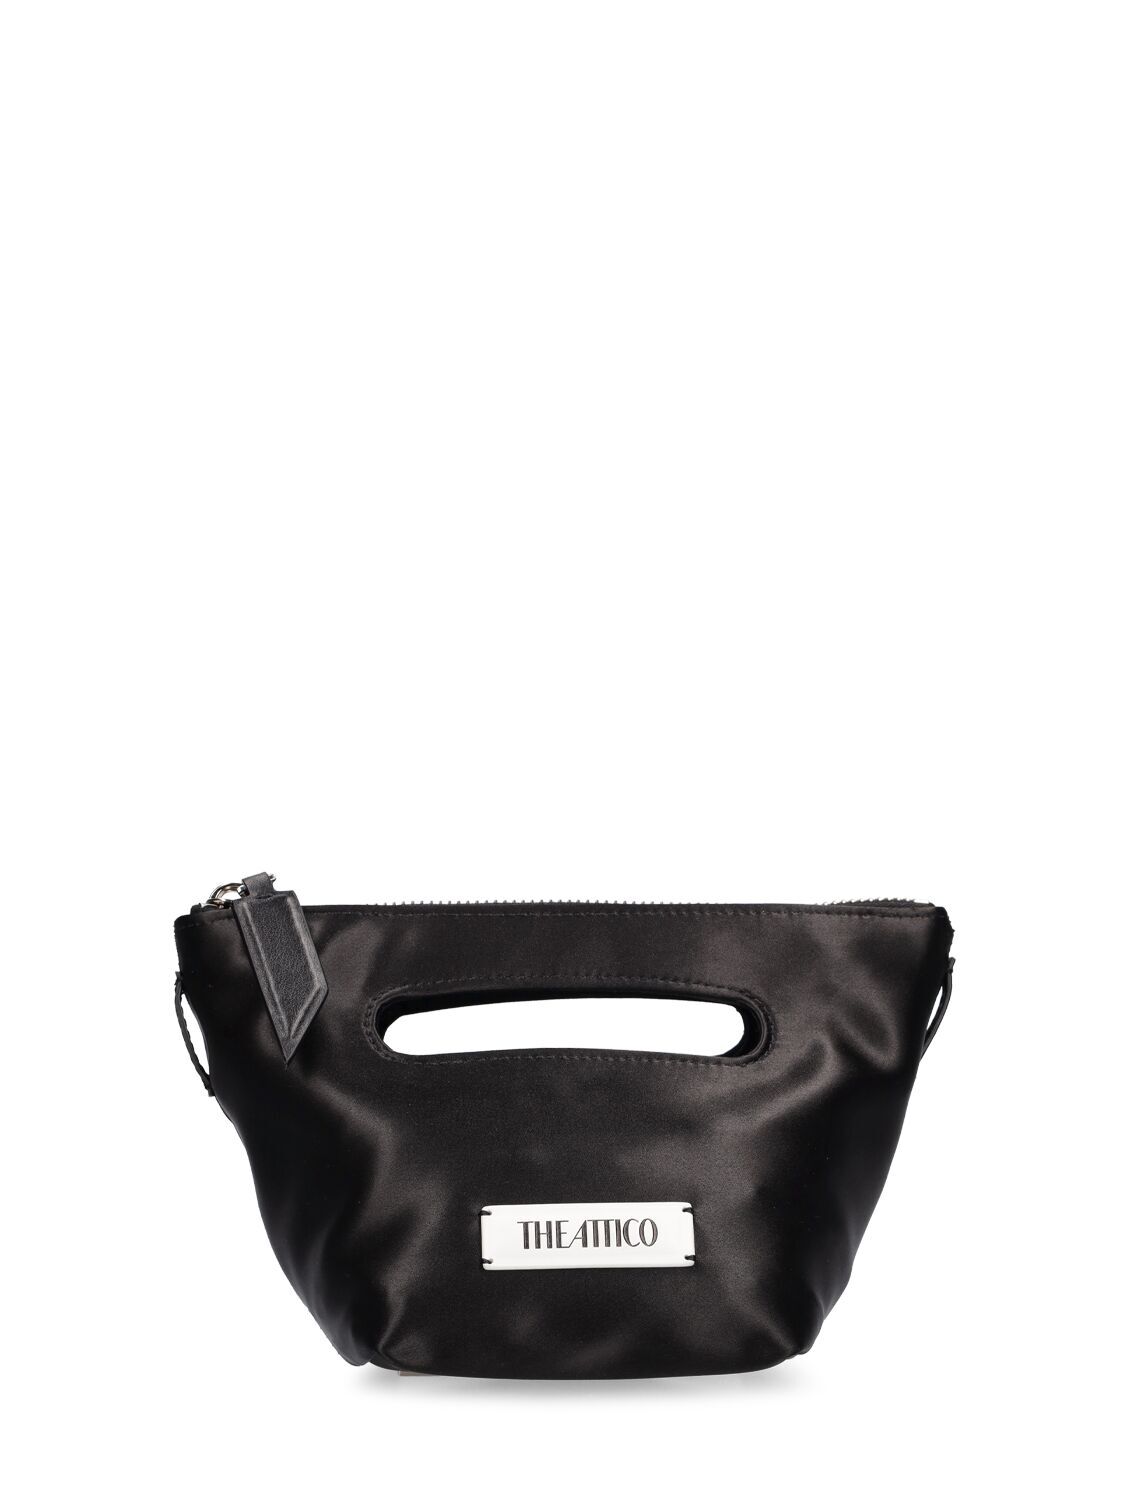 THE ATTICO Via Dei Giardini 15 Top Handle Bag in black